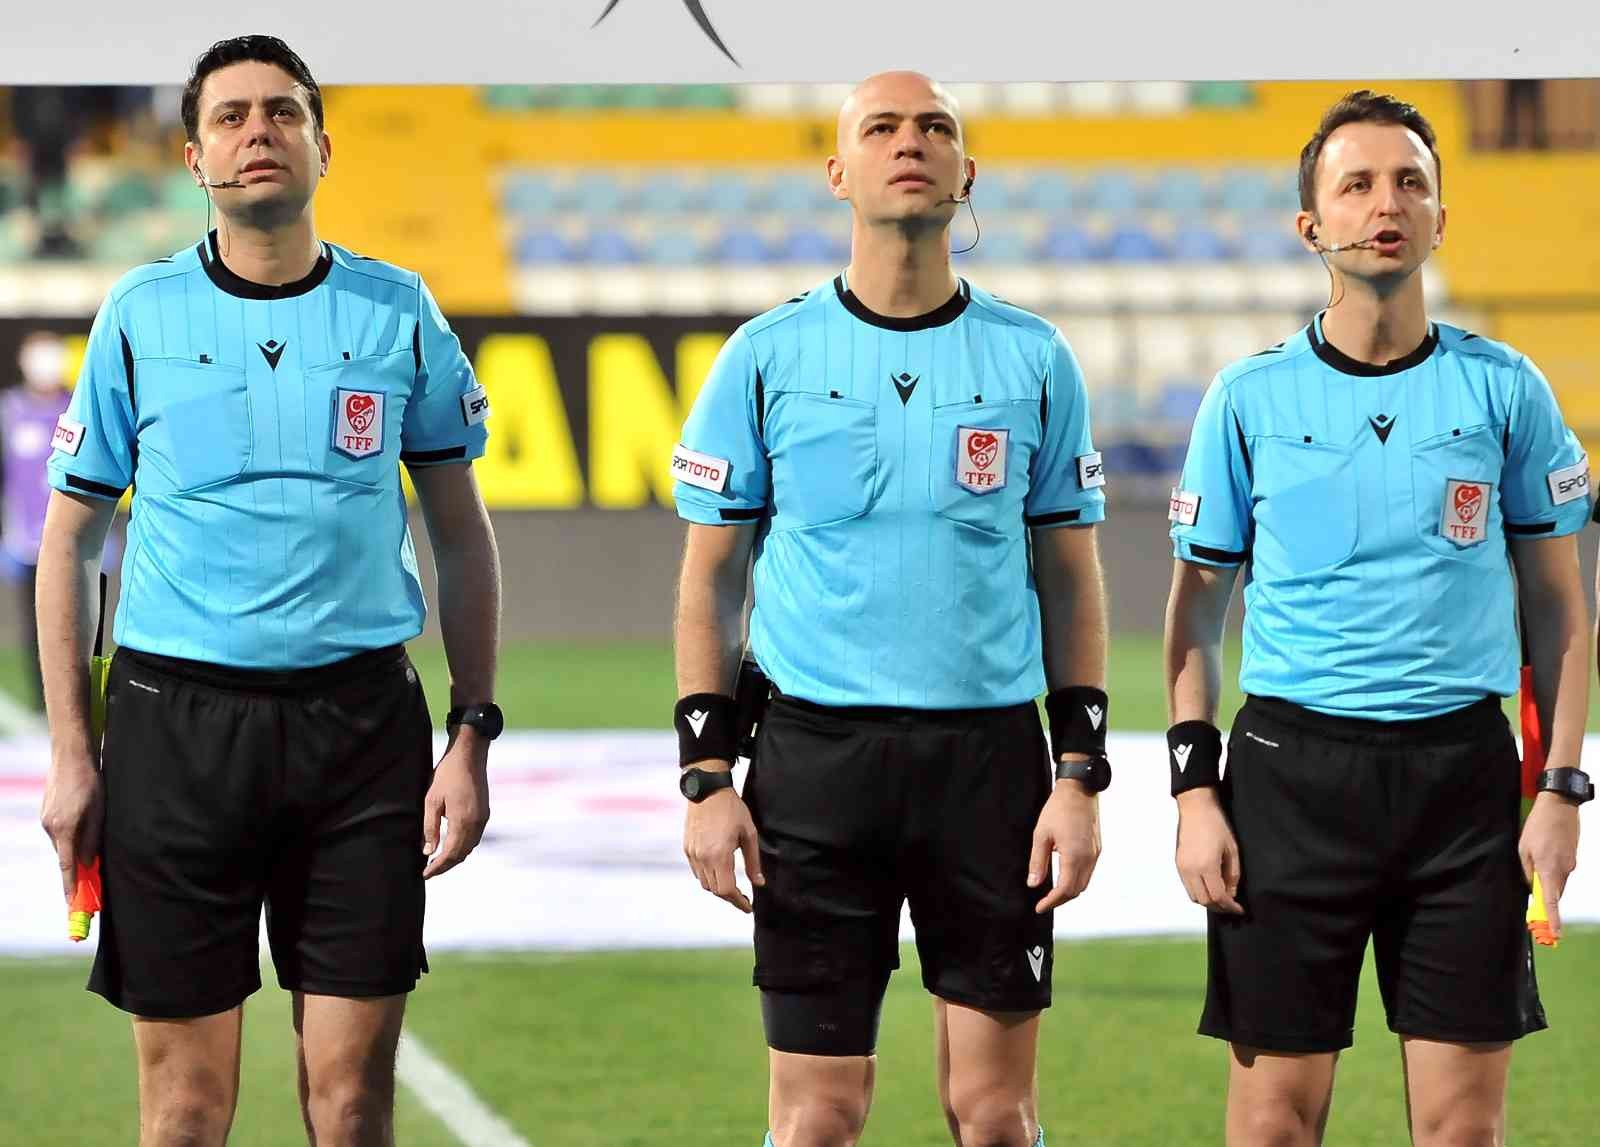 Spor Toto 1. Lig’in 27. haftasında İstanbulspor, sahasında karşılaştığı Kocaelispor ile 1-1 berabere kaldı. Maçtan dakikalar 42. dakikada ...